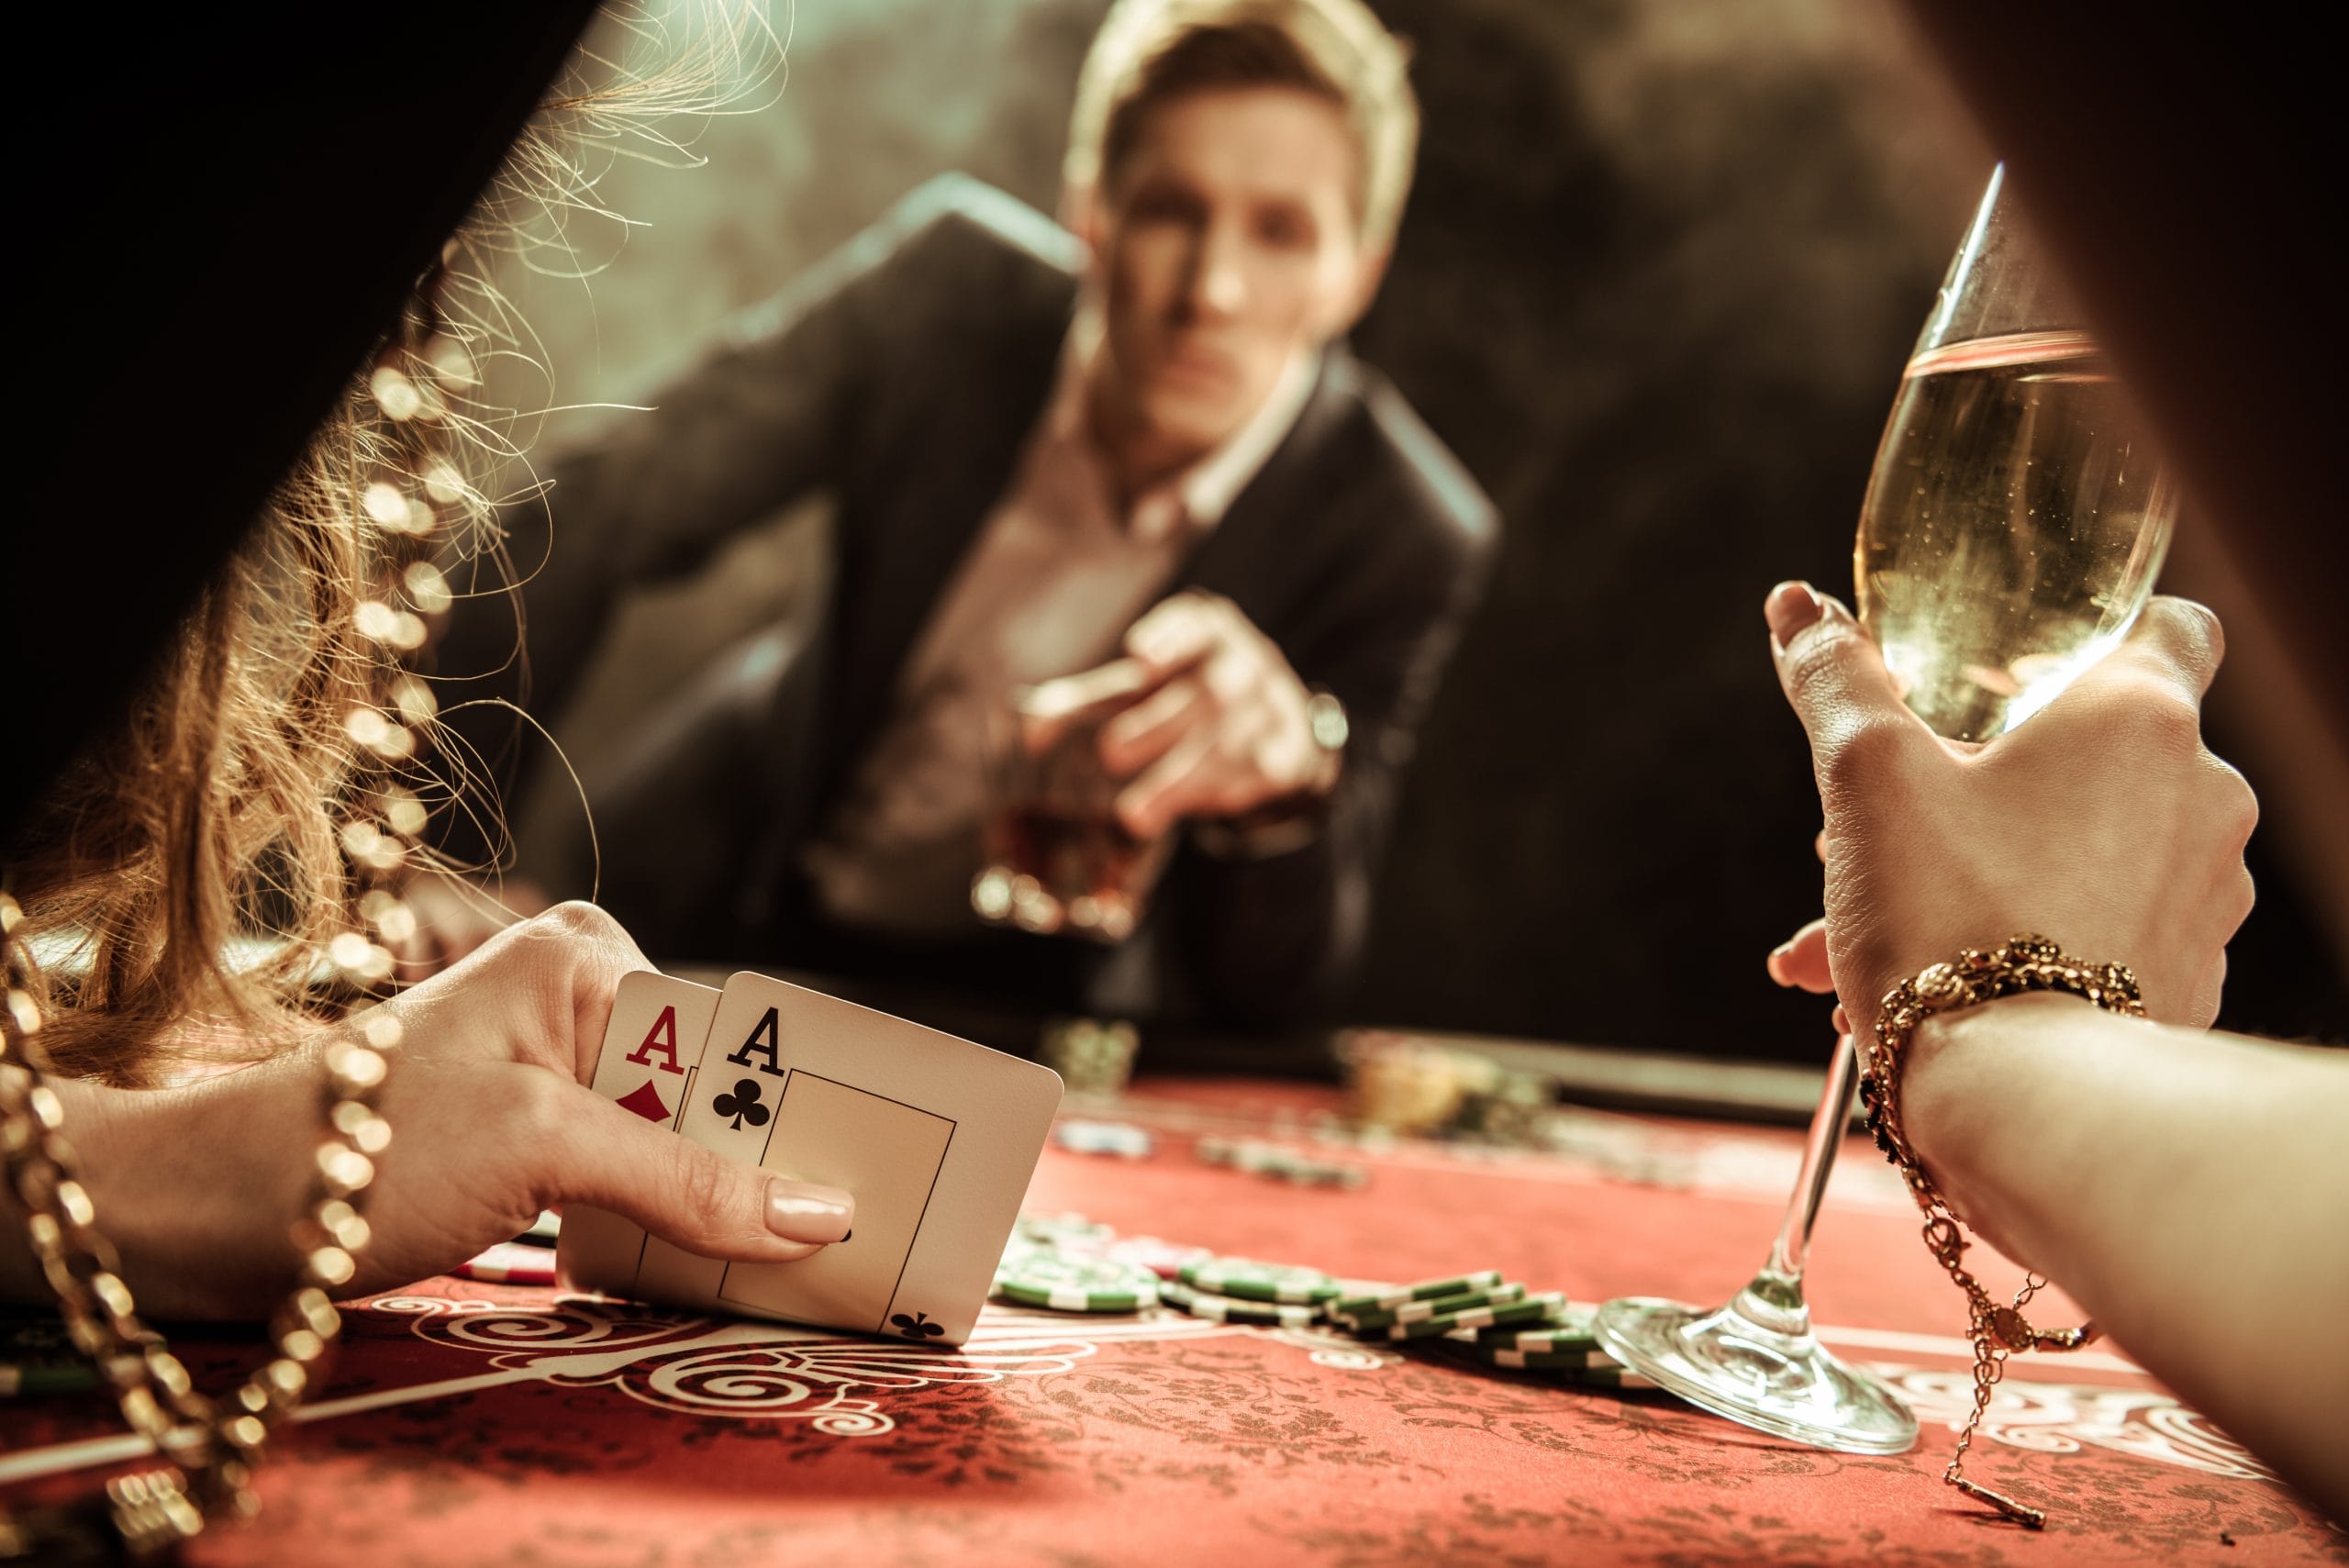 Hraj chytrejšie: Ako sa stať víťazným hazardným hráčom?